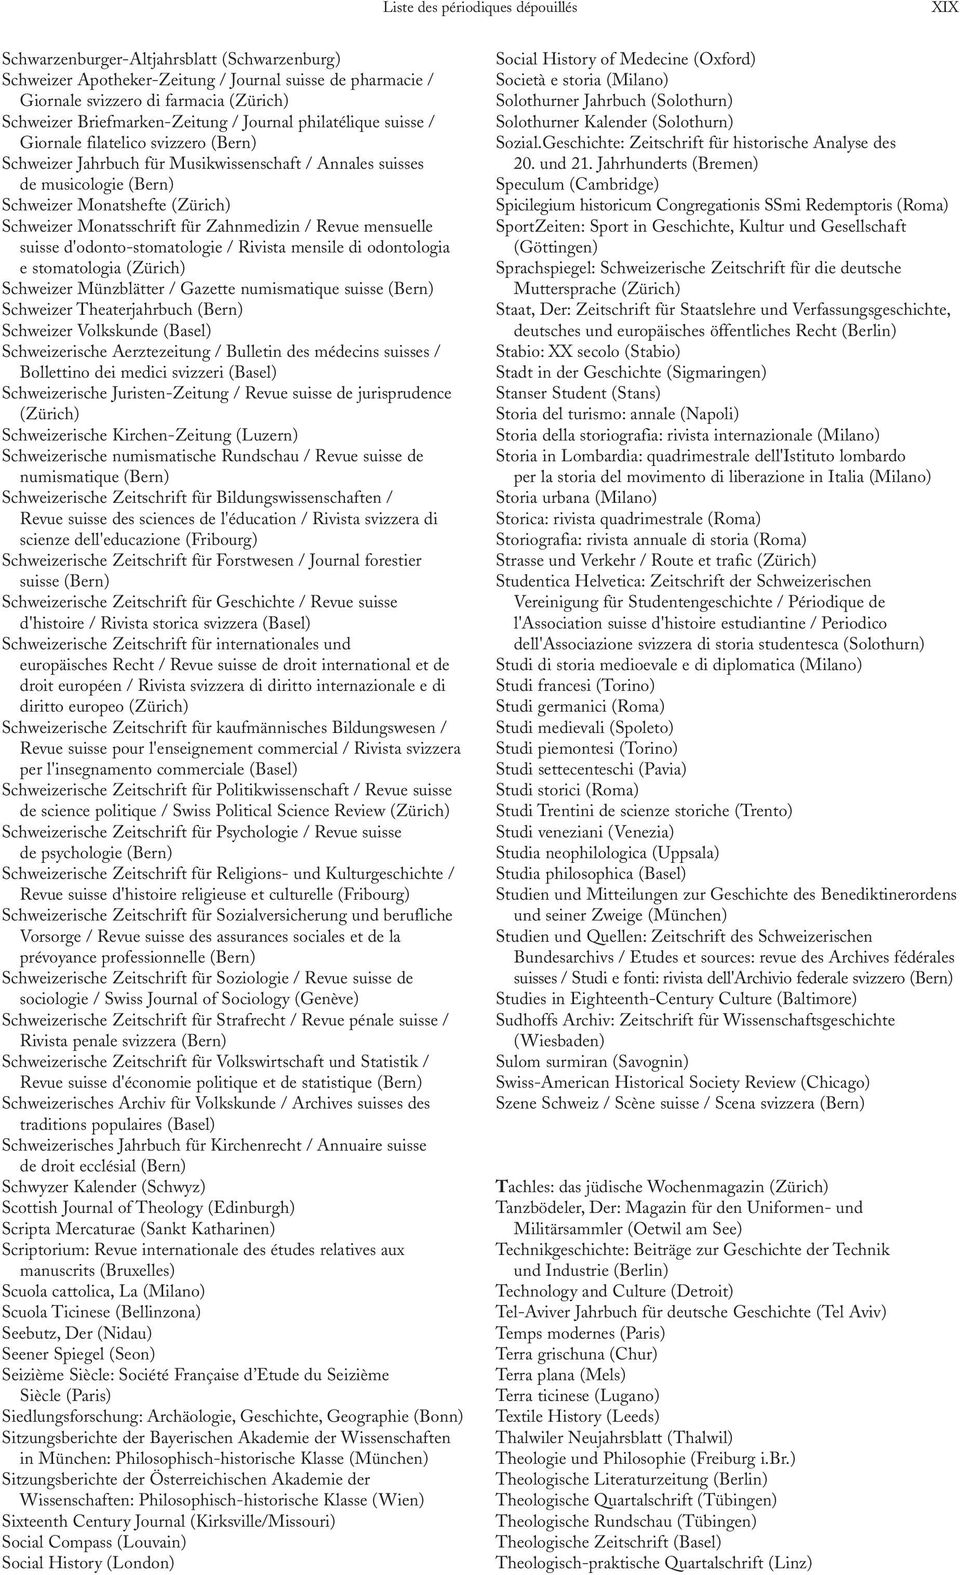 Schweizer Monatsschrift für Zahnmedizin / Revue mensuelle suisse d'odonto-stomatologie / Rivista mensile di odontologia e stomatologia (Zürich) Schweizer Münzblätter / Gazette numismatique suisse